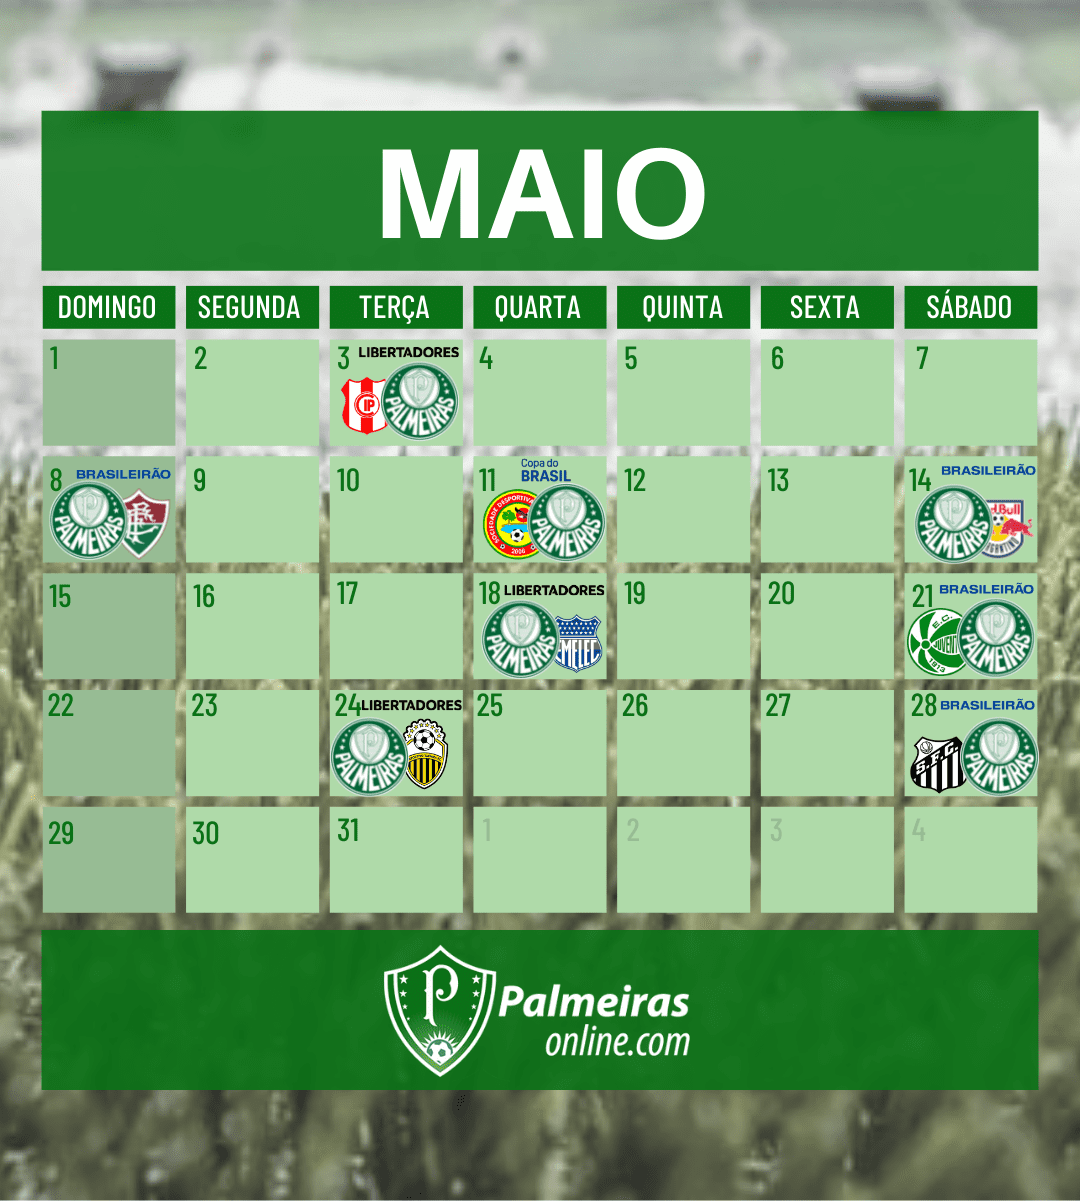 Maio chegando com calendário de grandes jogos para o Palmeiras